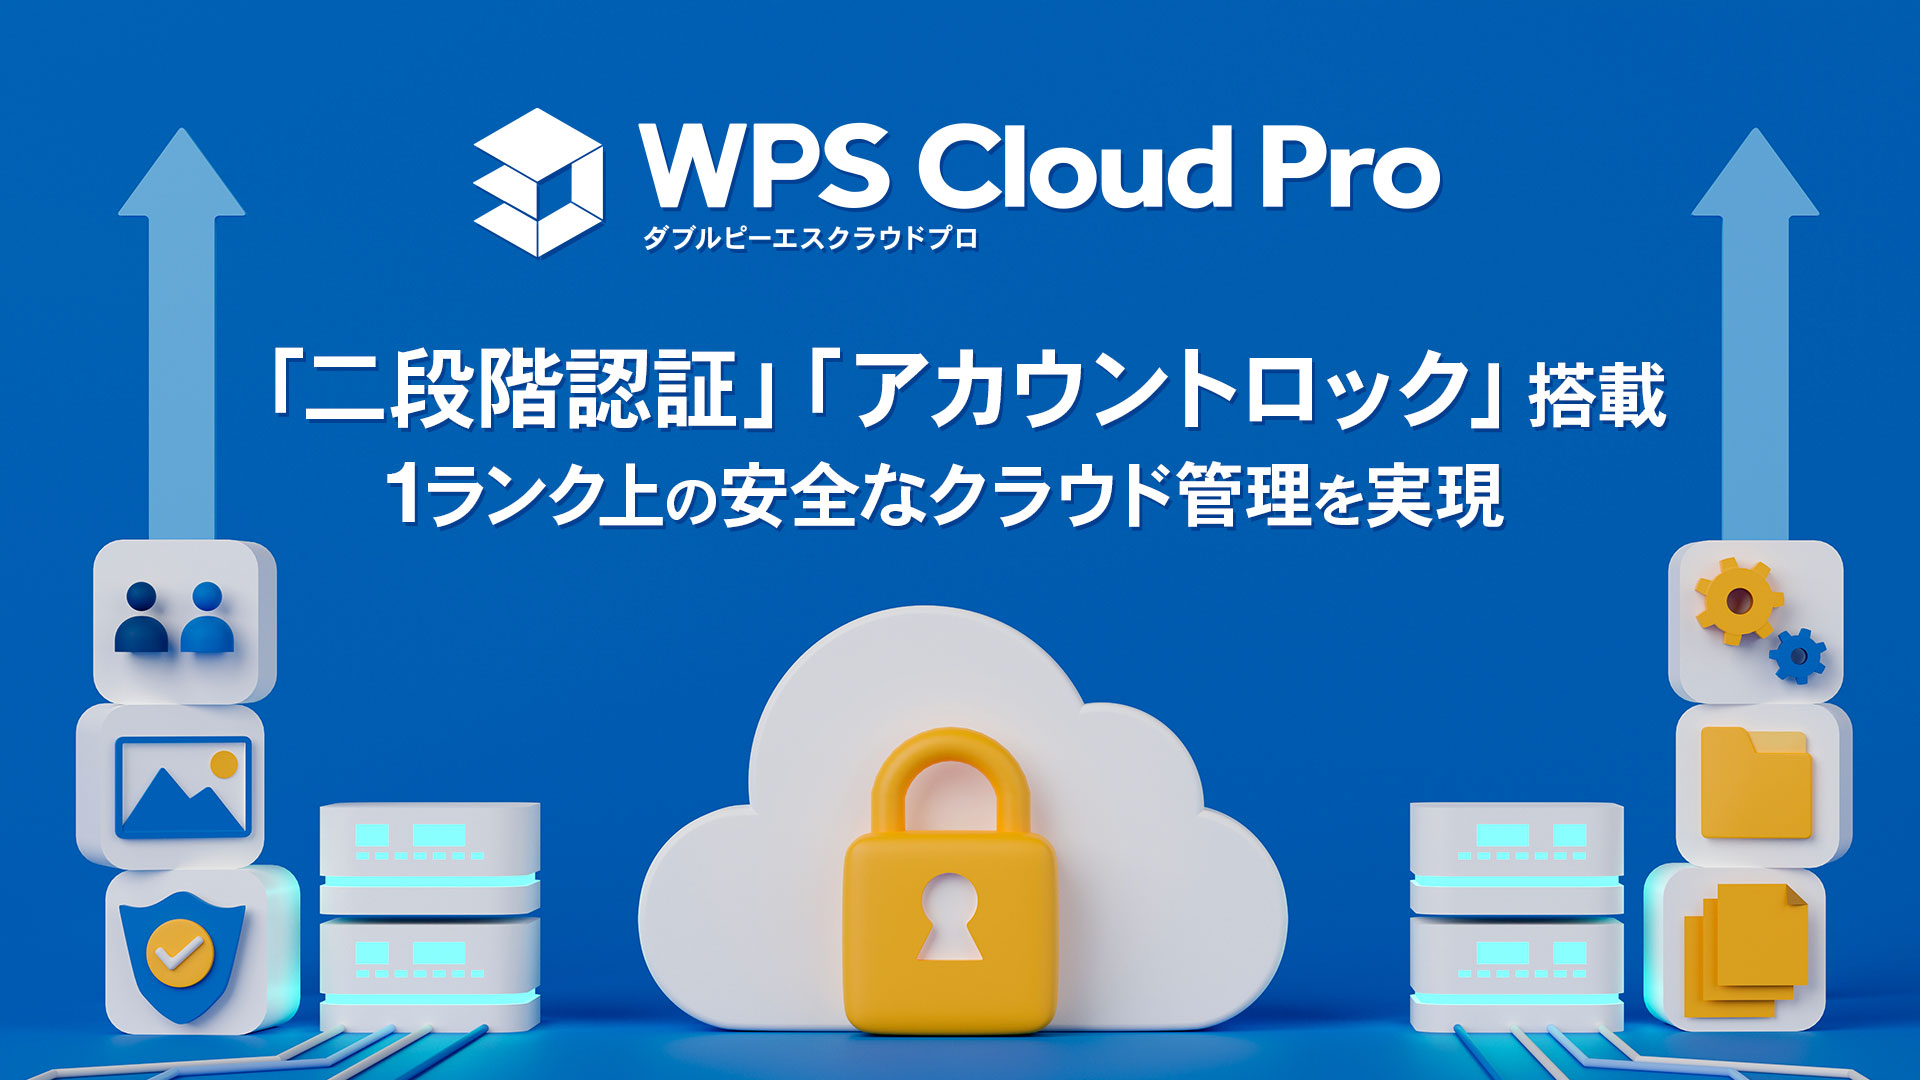 法人向けクラウド型オフィスソフト「WPS Cloud Pro」に「二段階認証」「アカウントロック」機能を搭載し、セキュリティをさらに強化